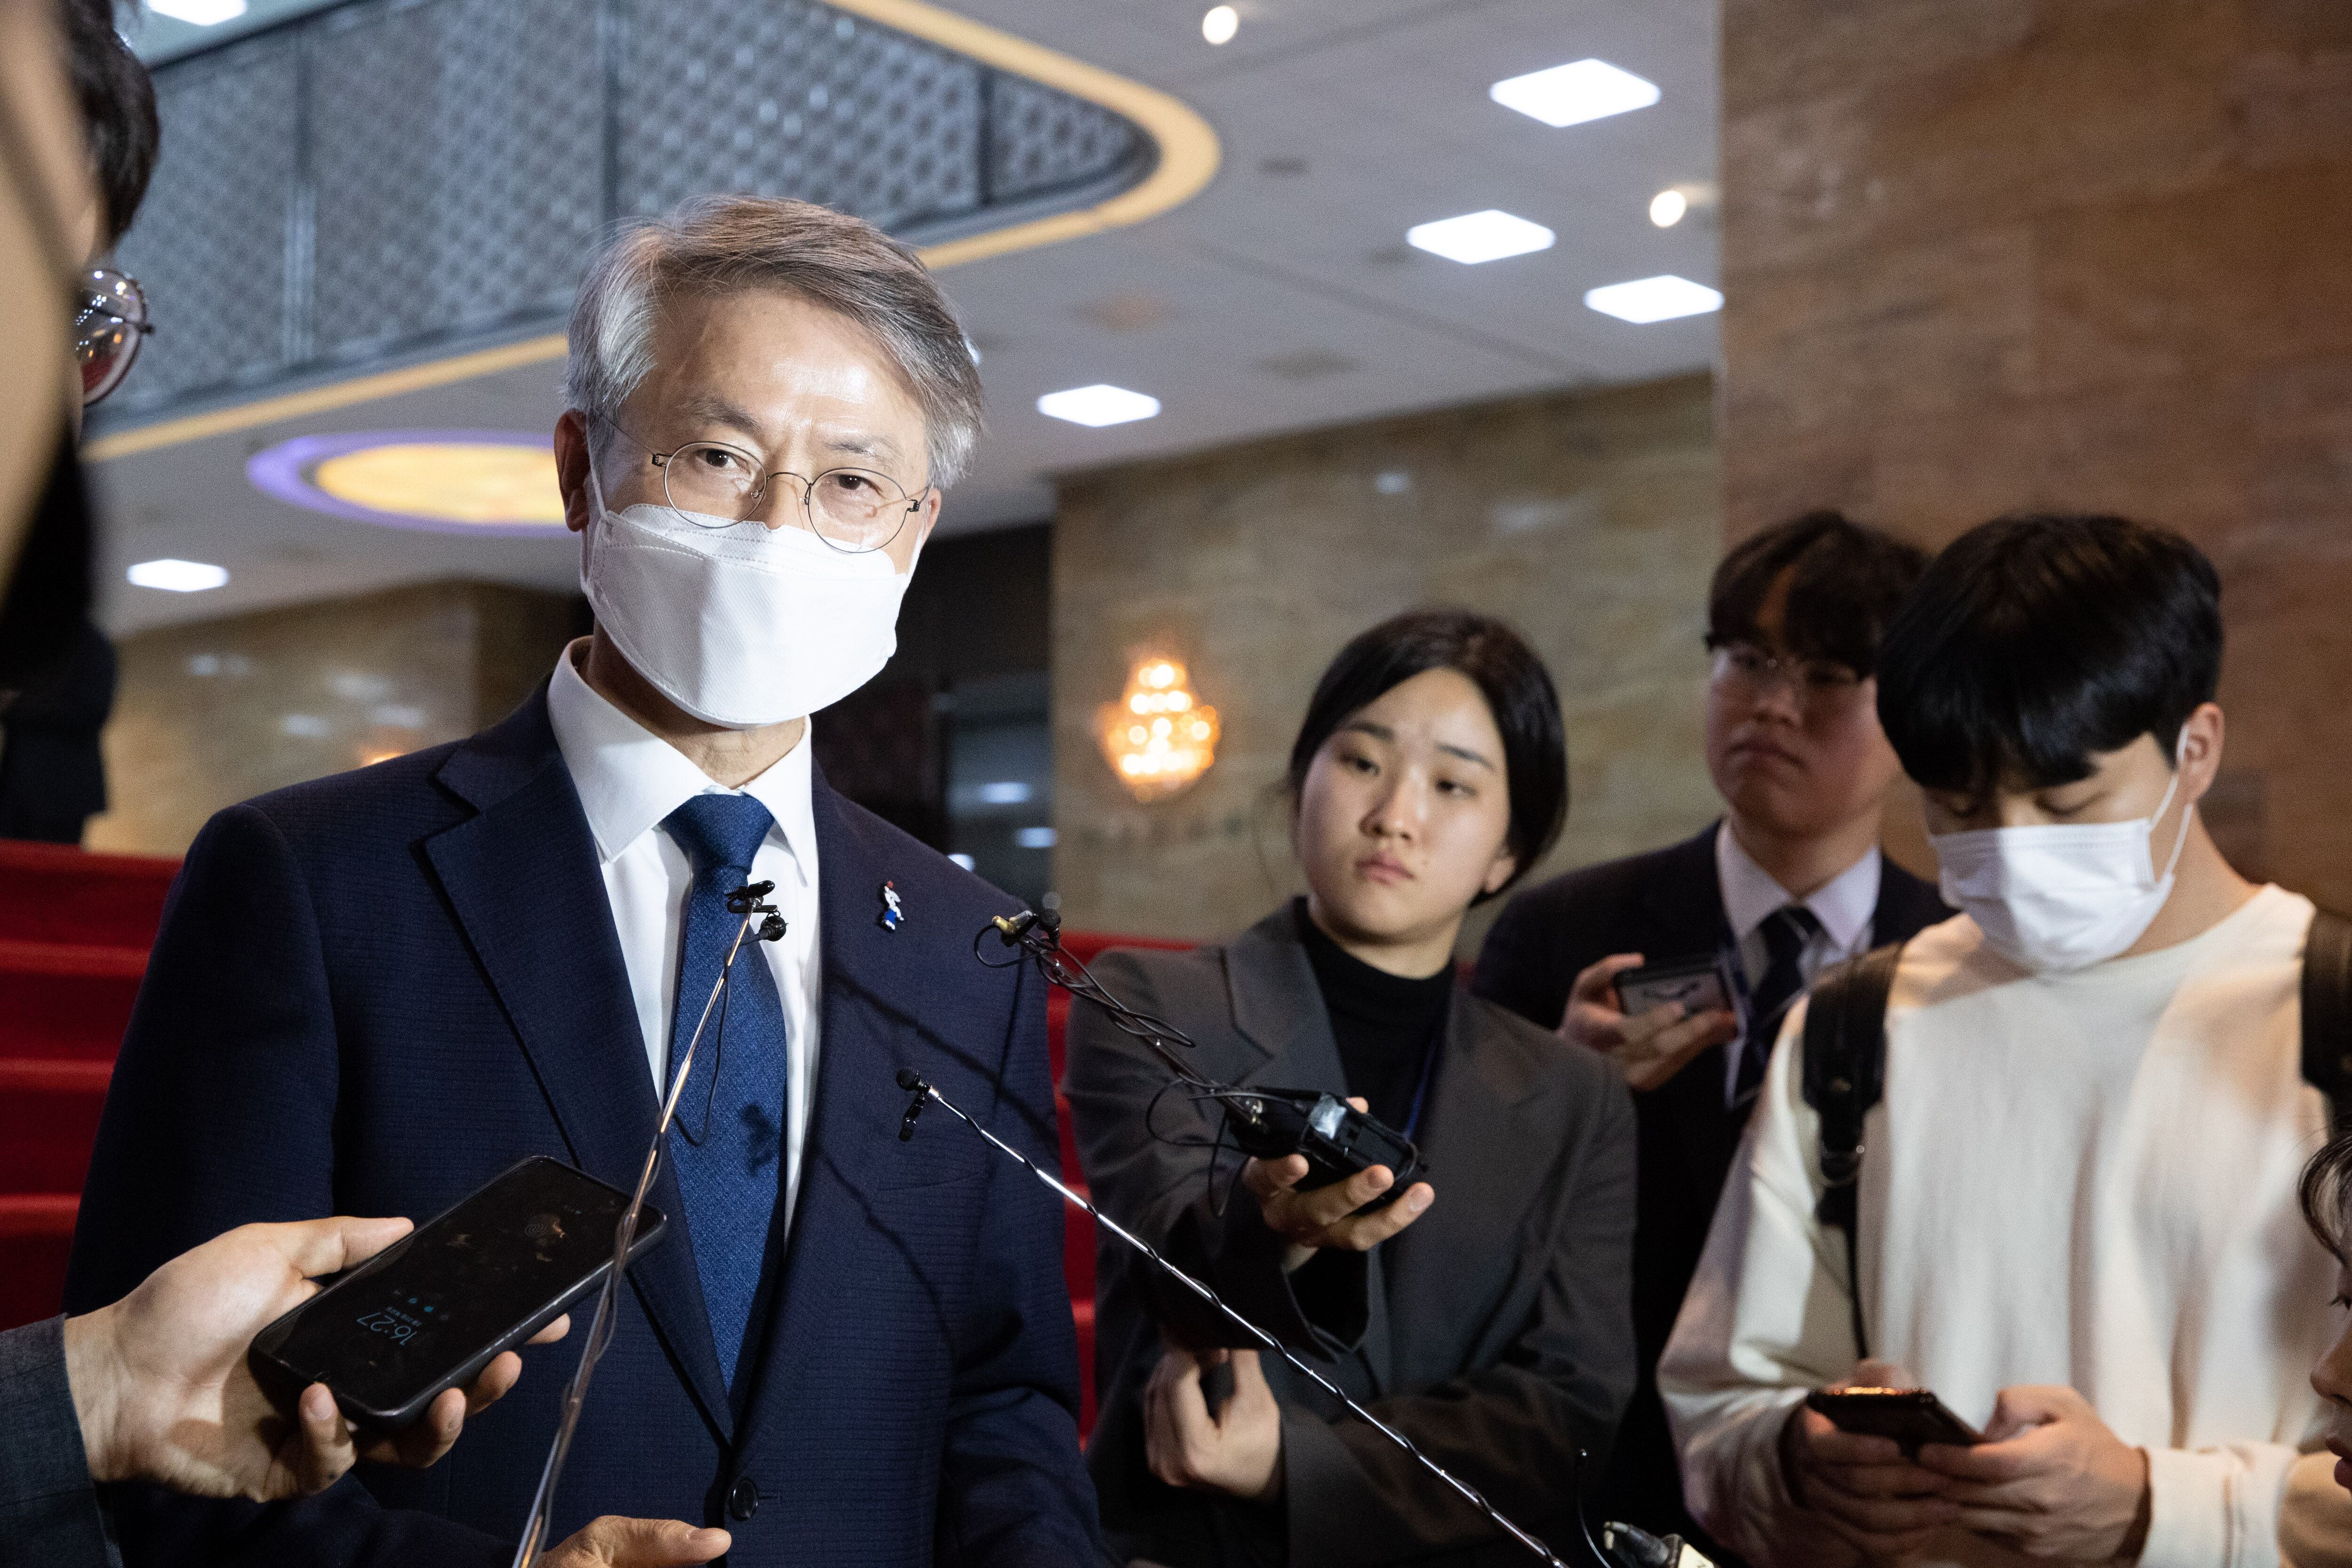 민형배 무소속 의원이 23일 오후 서울 여의도 국회에서 취재진 질문에 답변하고 있다. /뉴스1